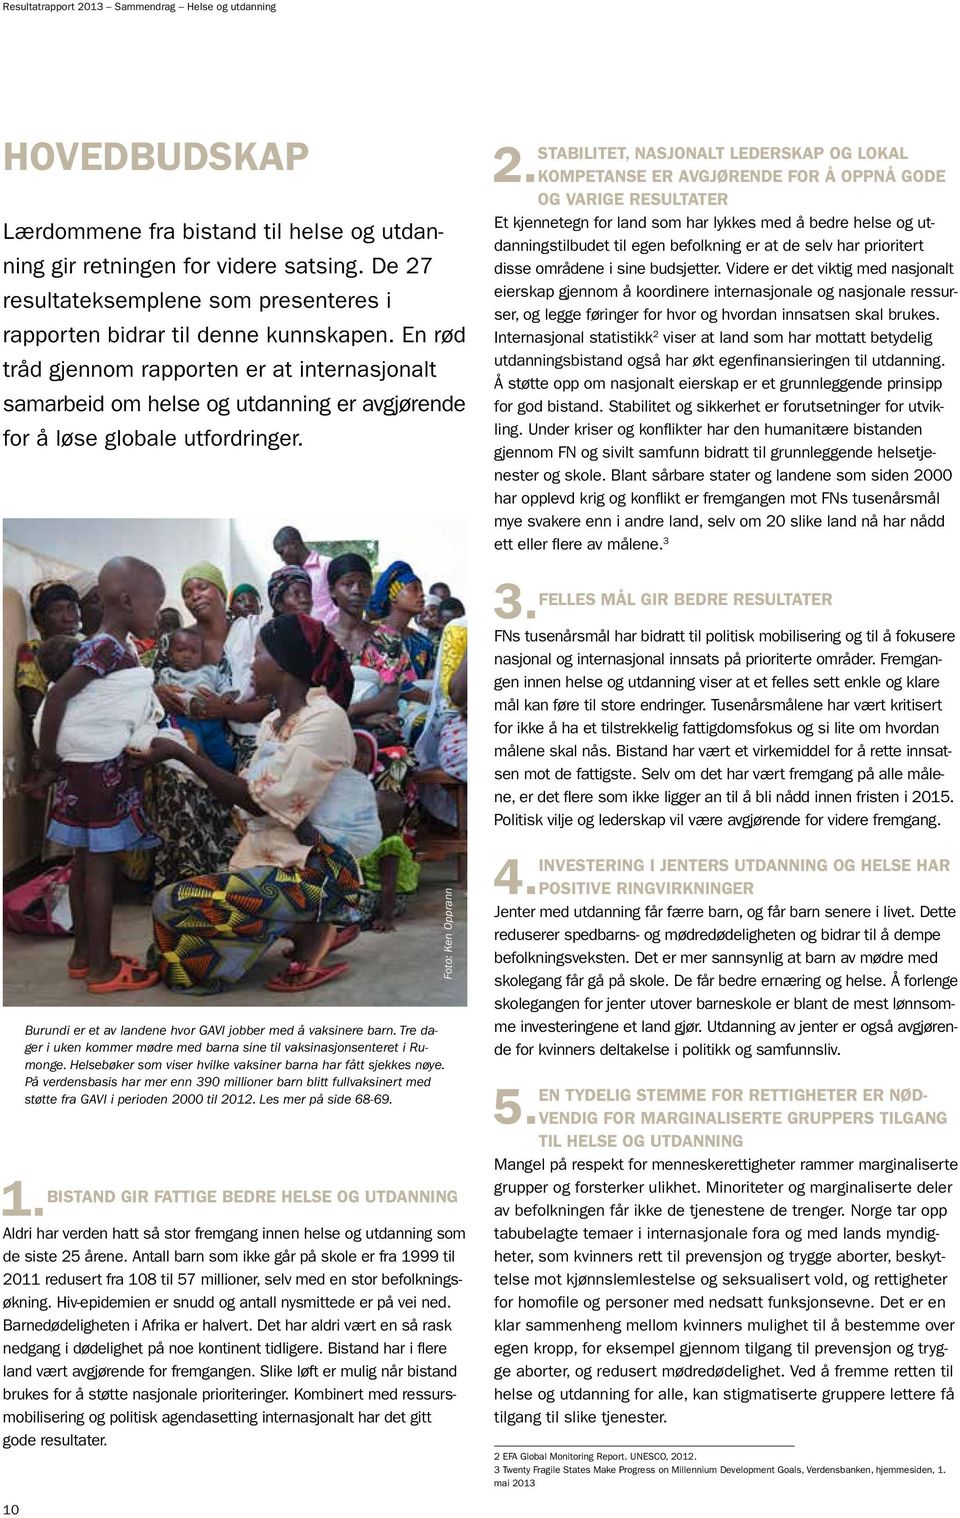 En rød tråd gjennom rapporten er at internasjonalt samarbeid om helse og utdanning er avgjørende for å løse globale utfordringer. Burundi er et av landene hvor GAVI jobber med å vaksinere barn.